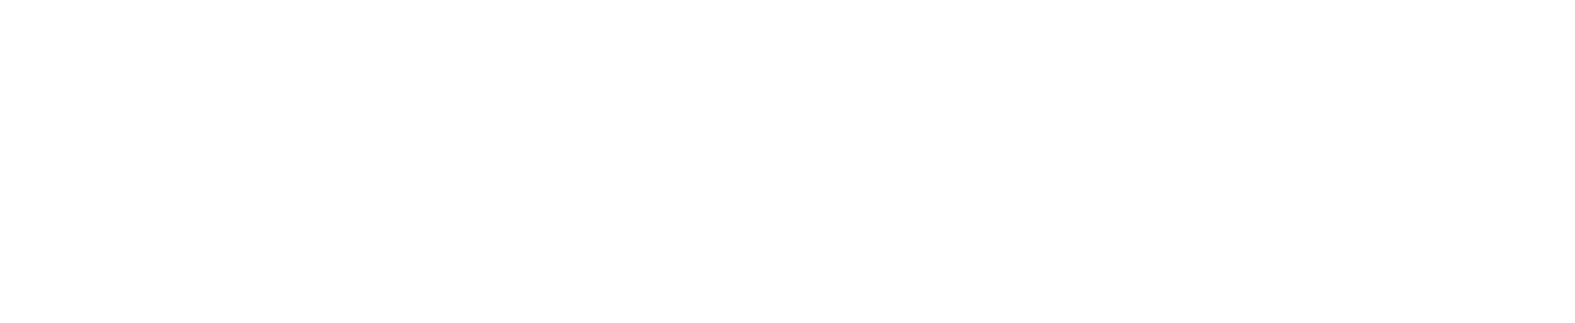 PagerDuty logo grand pour les fonds sombres (PNG transparent)